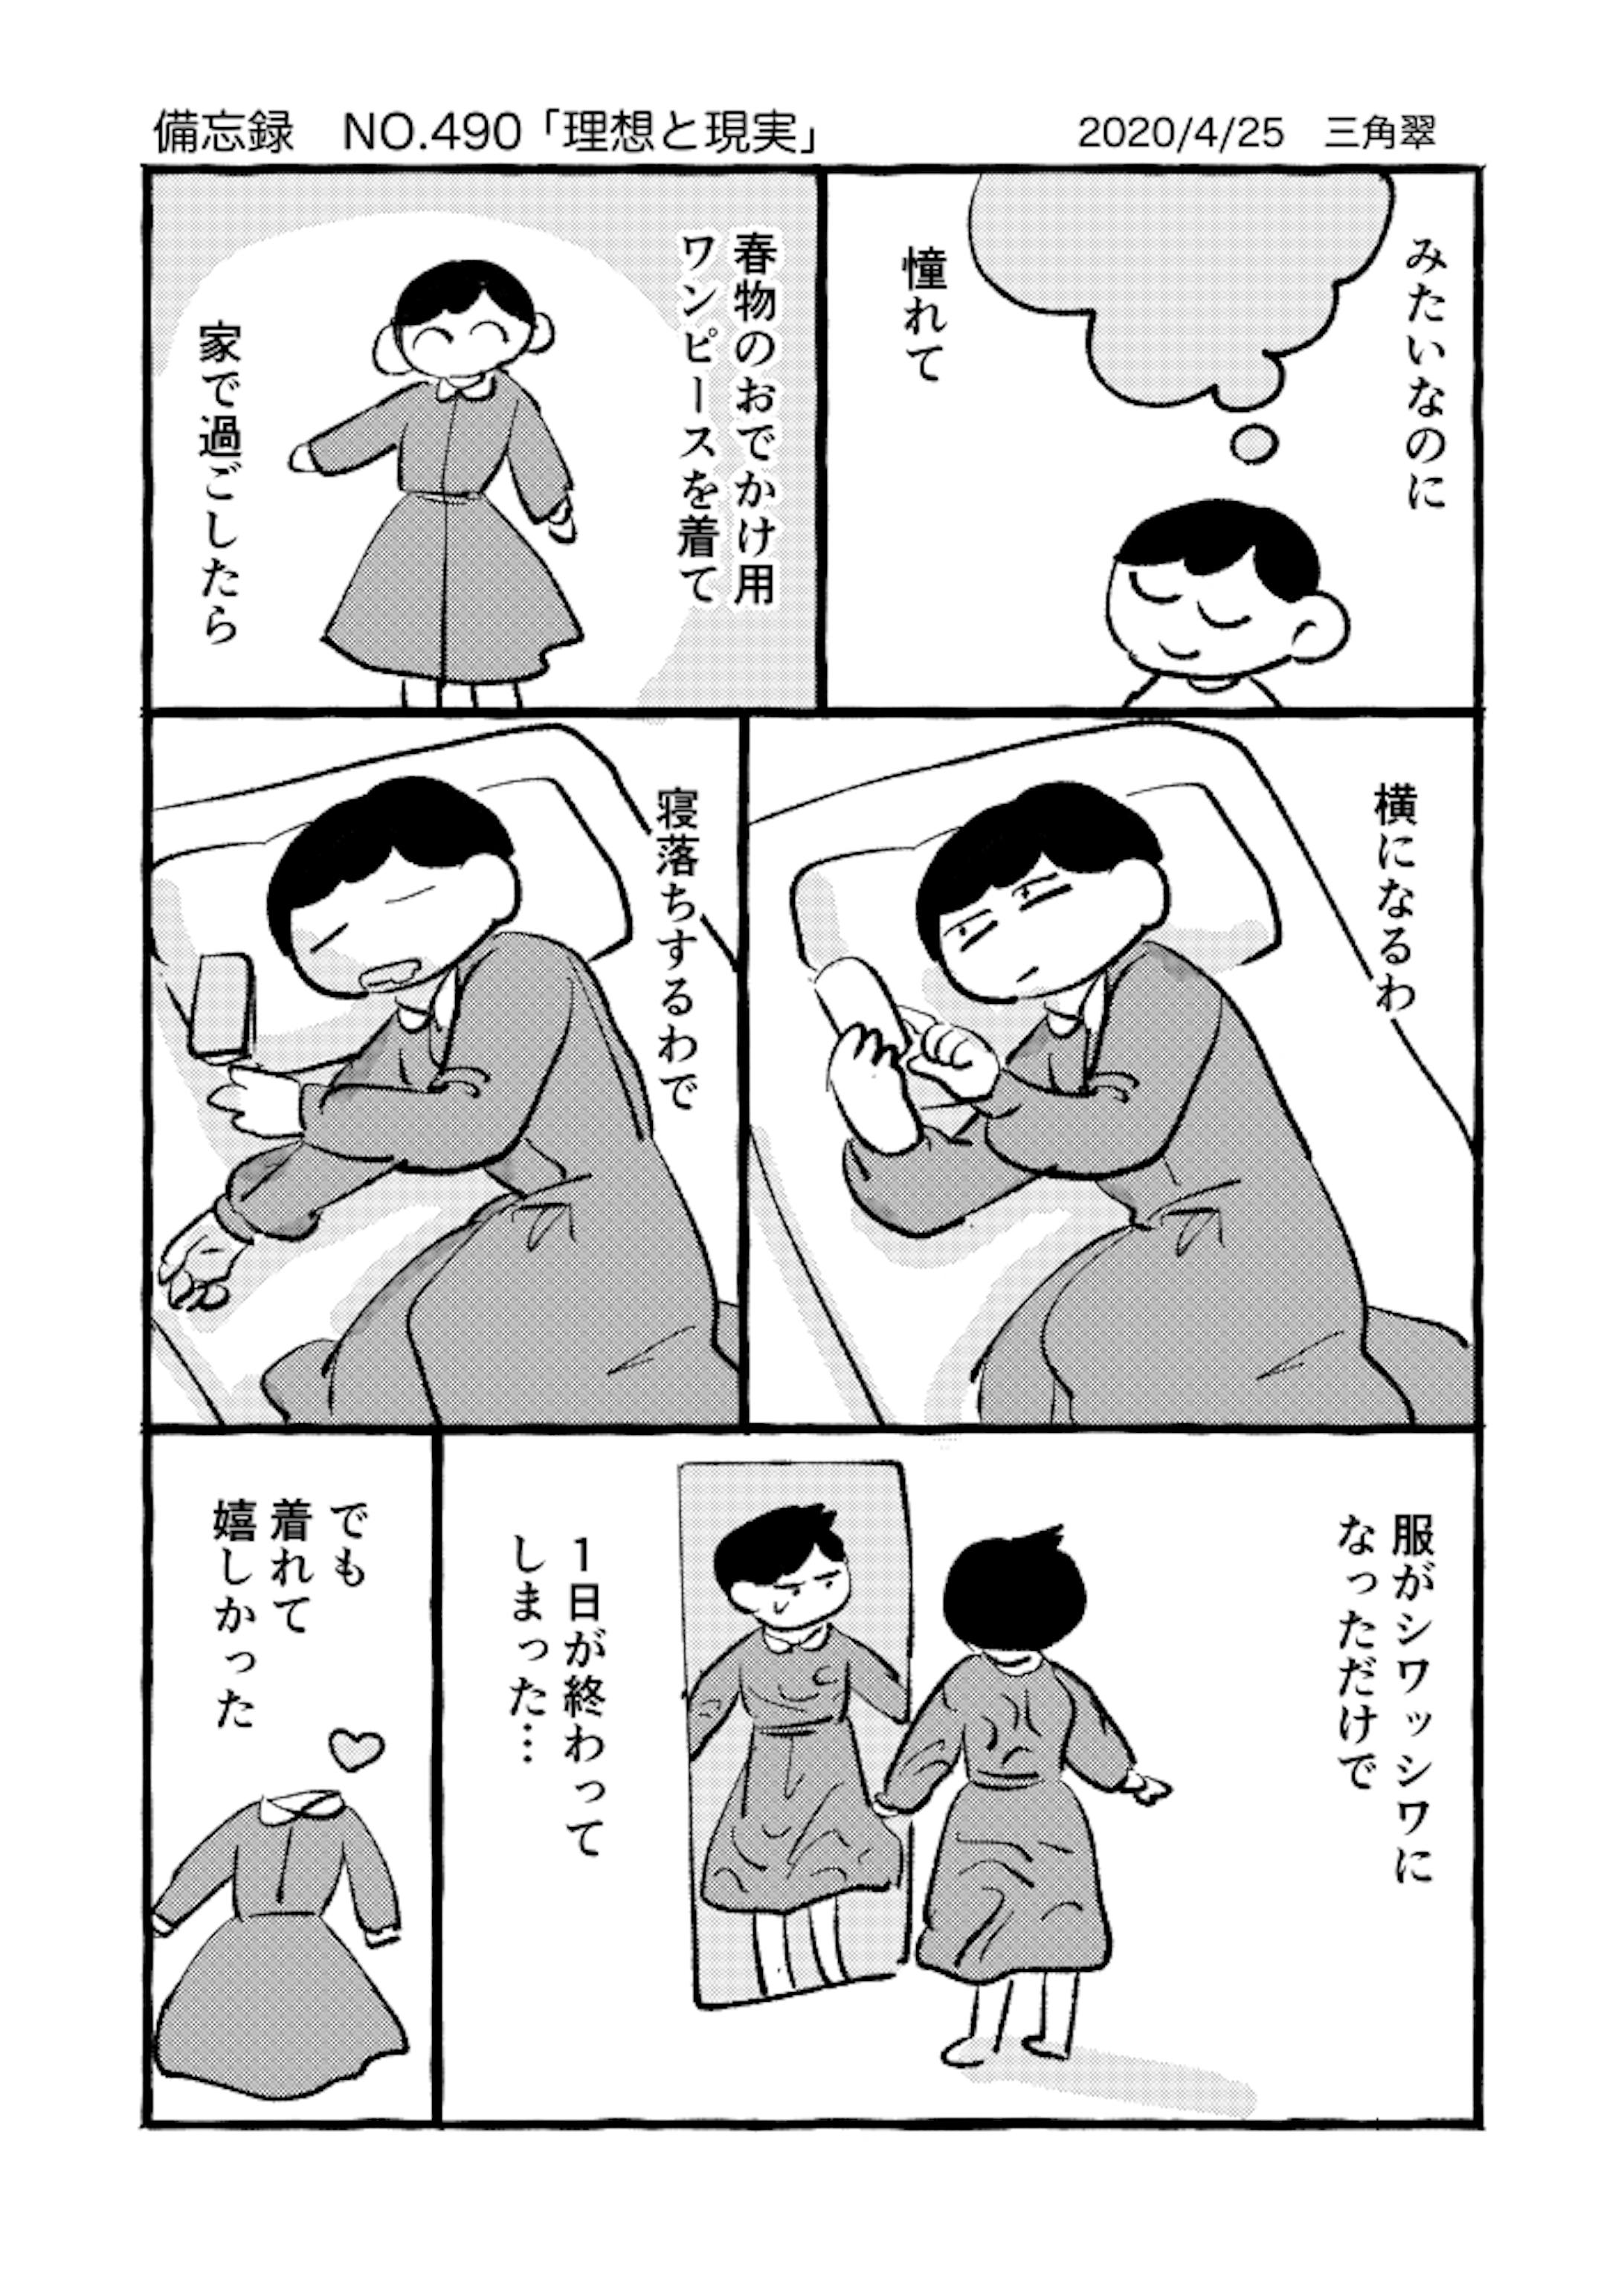 3pモノクロエッセイ漫画-3